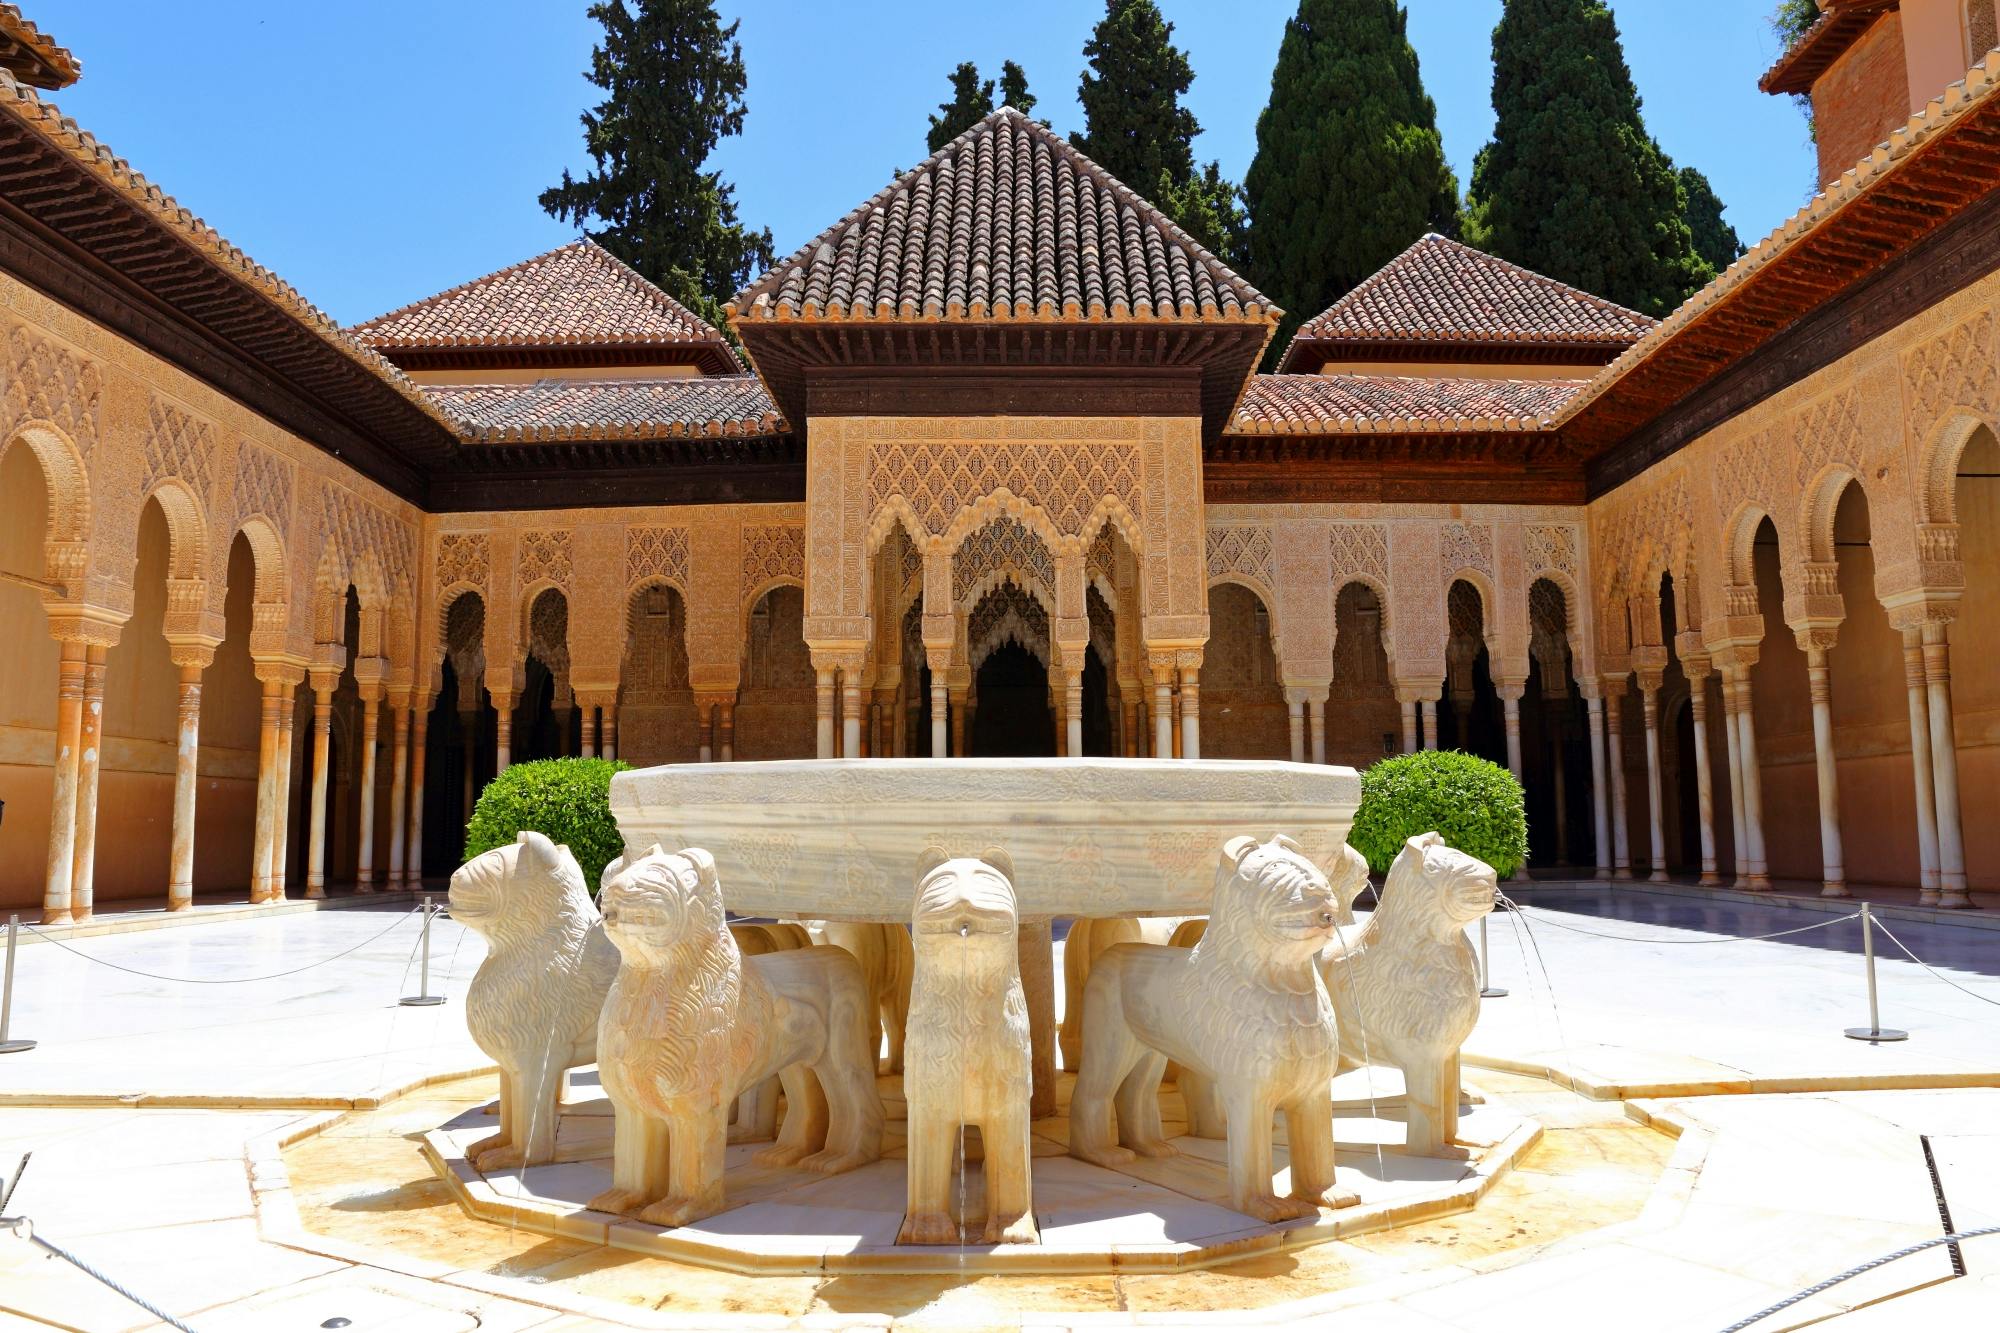 Vollständiger Zugang zur Alhambra mit Tickets ohne Anstehen und Führung auf Englisch